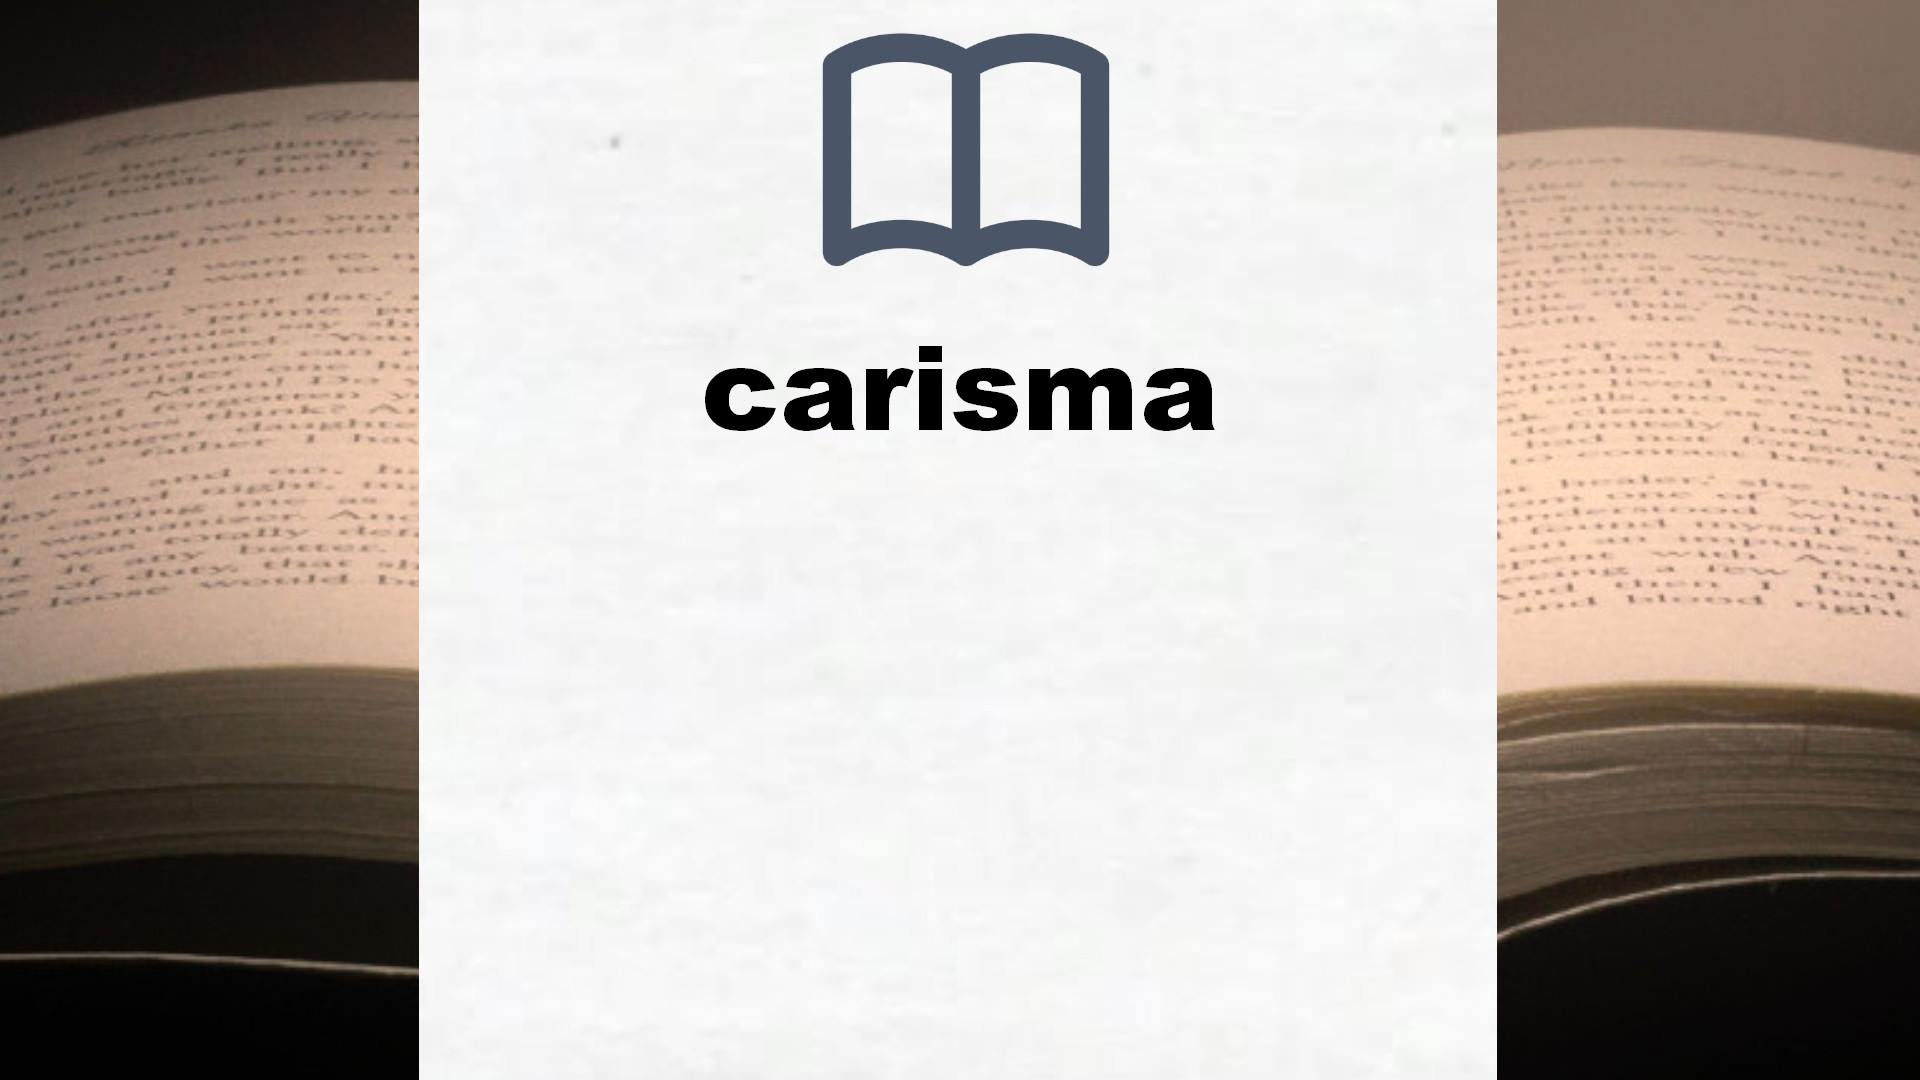 Libros sobre carisma